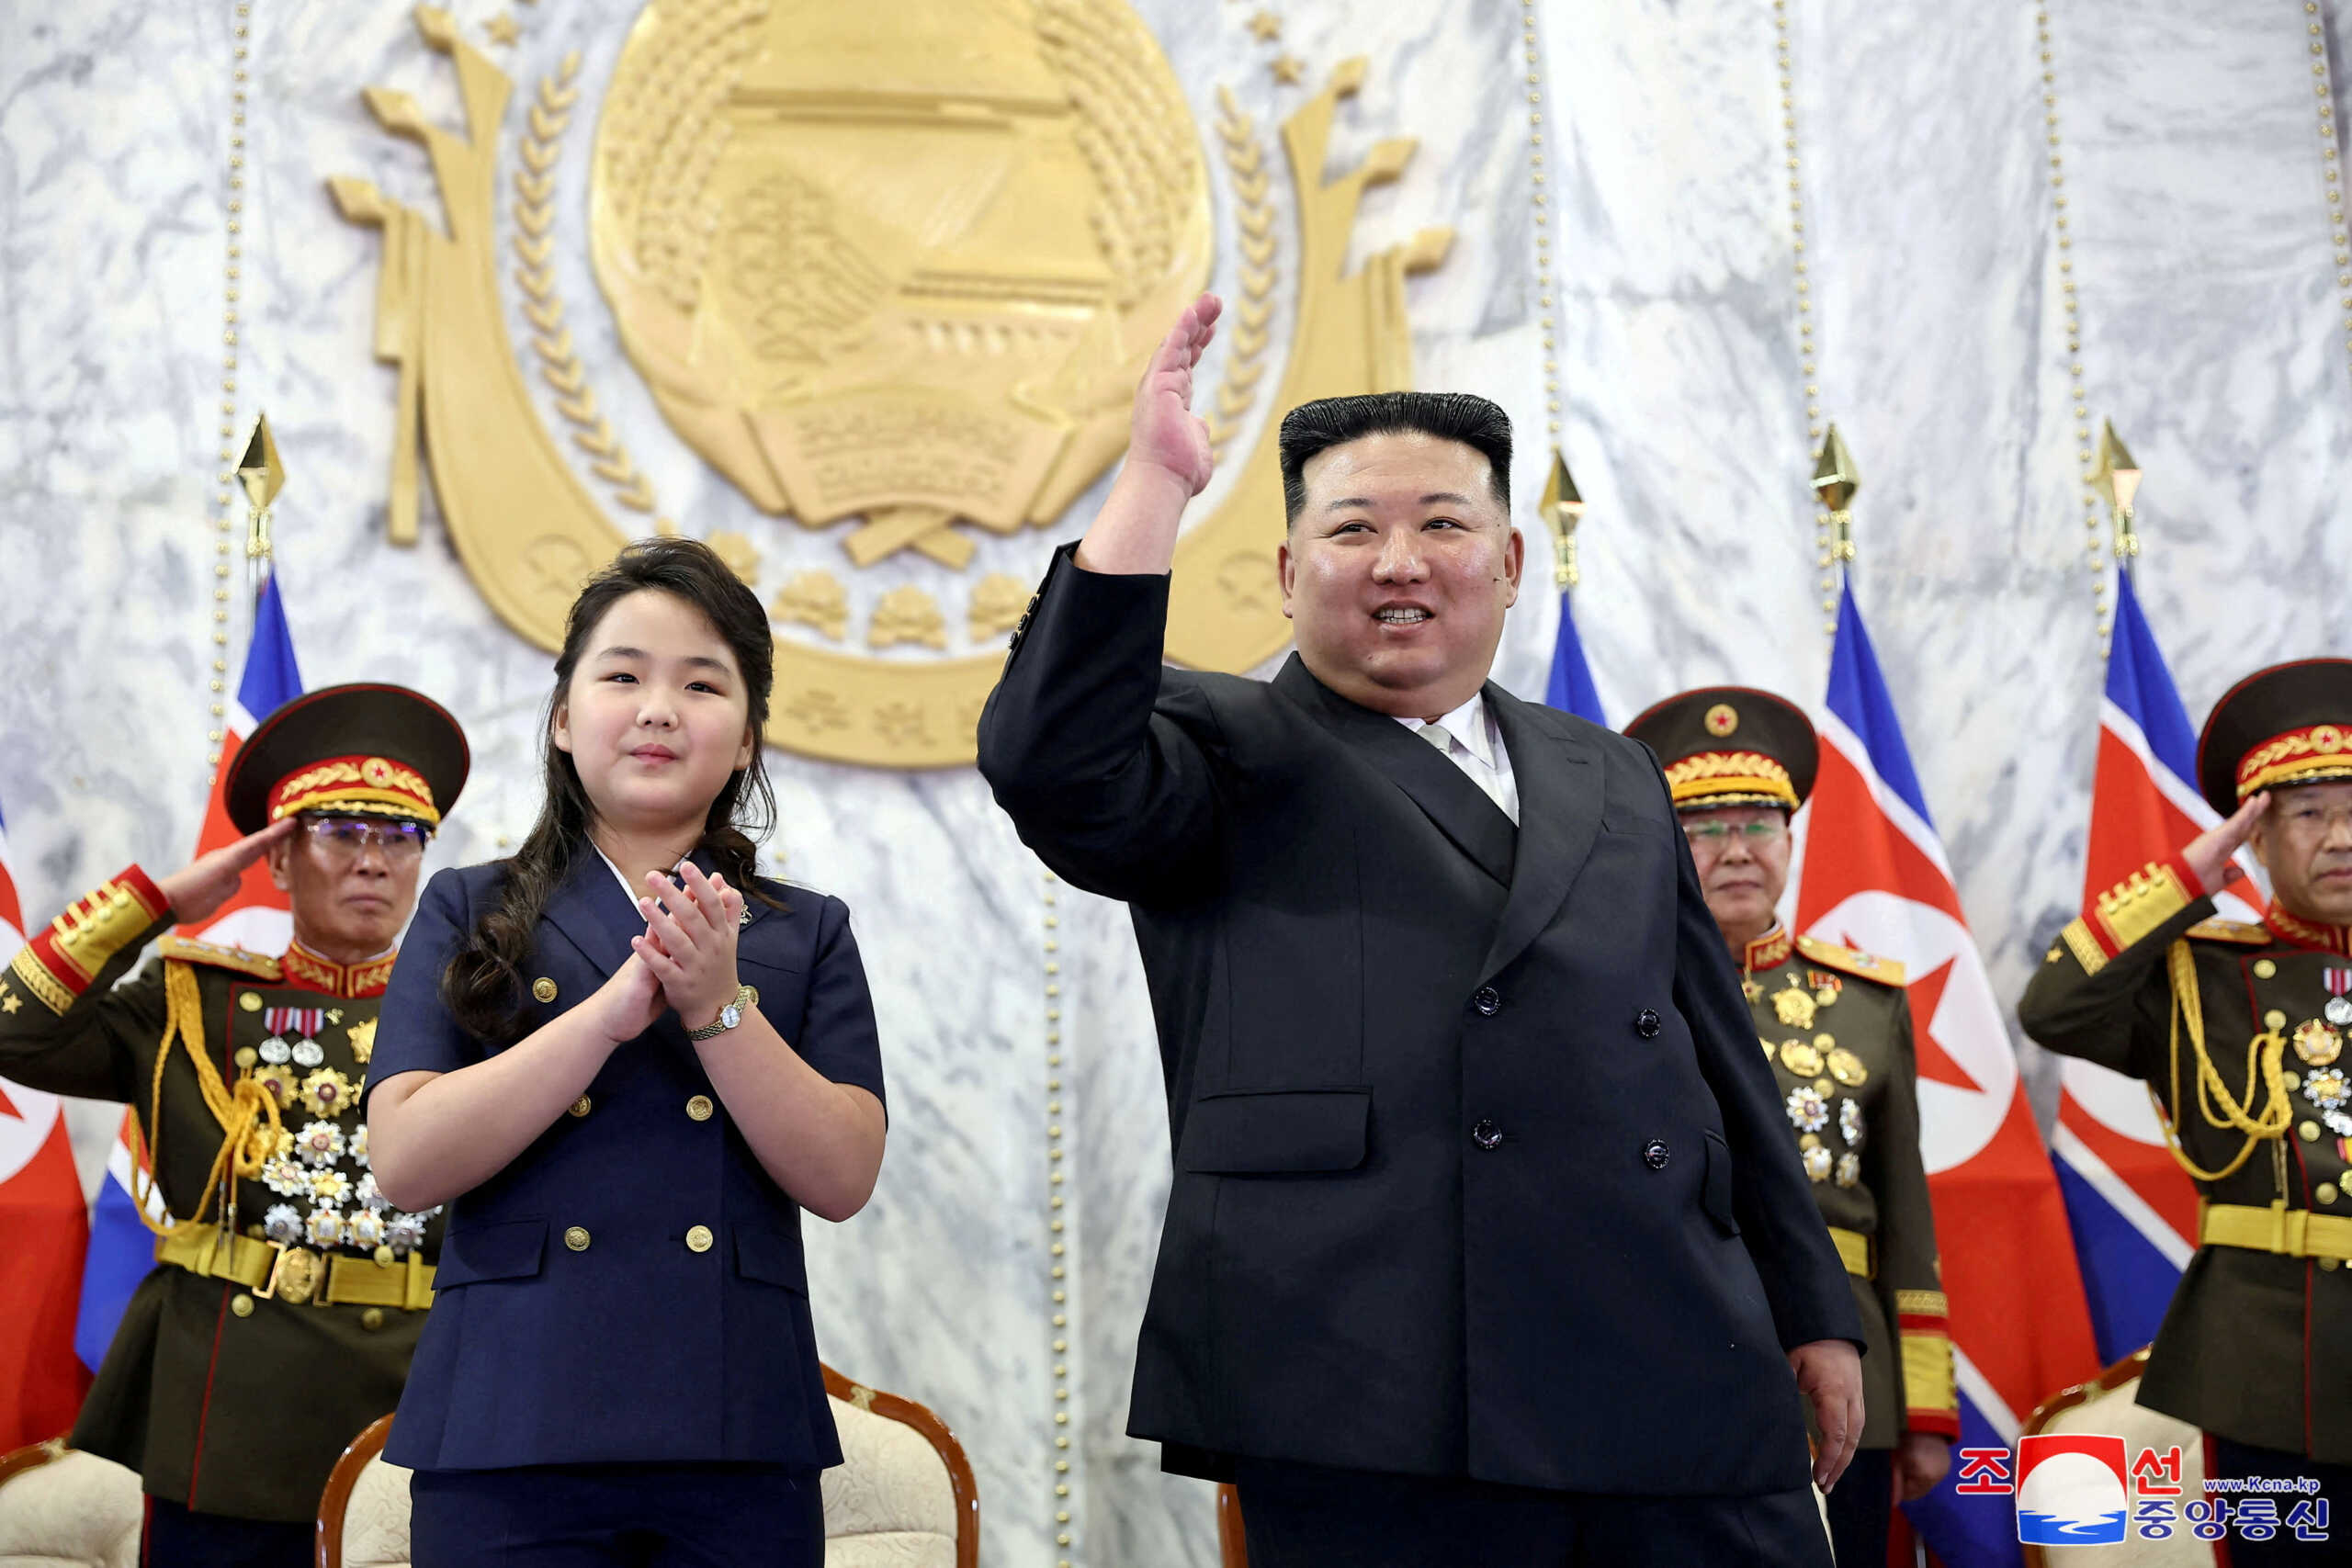 Βόρεια Κορέα: Ο Κιμ Γιονγκ Ουν με την κόρη του στην στρατιωτική παρέλαση για την εθνική επέτειο